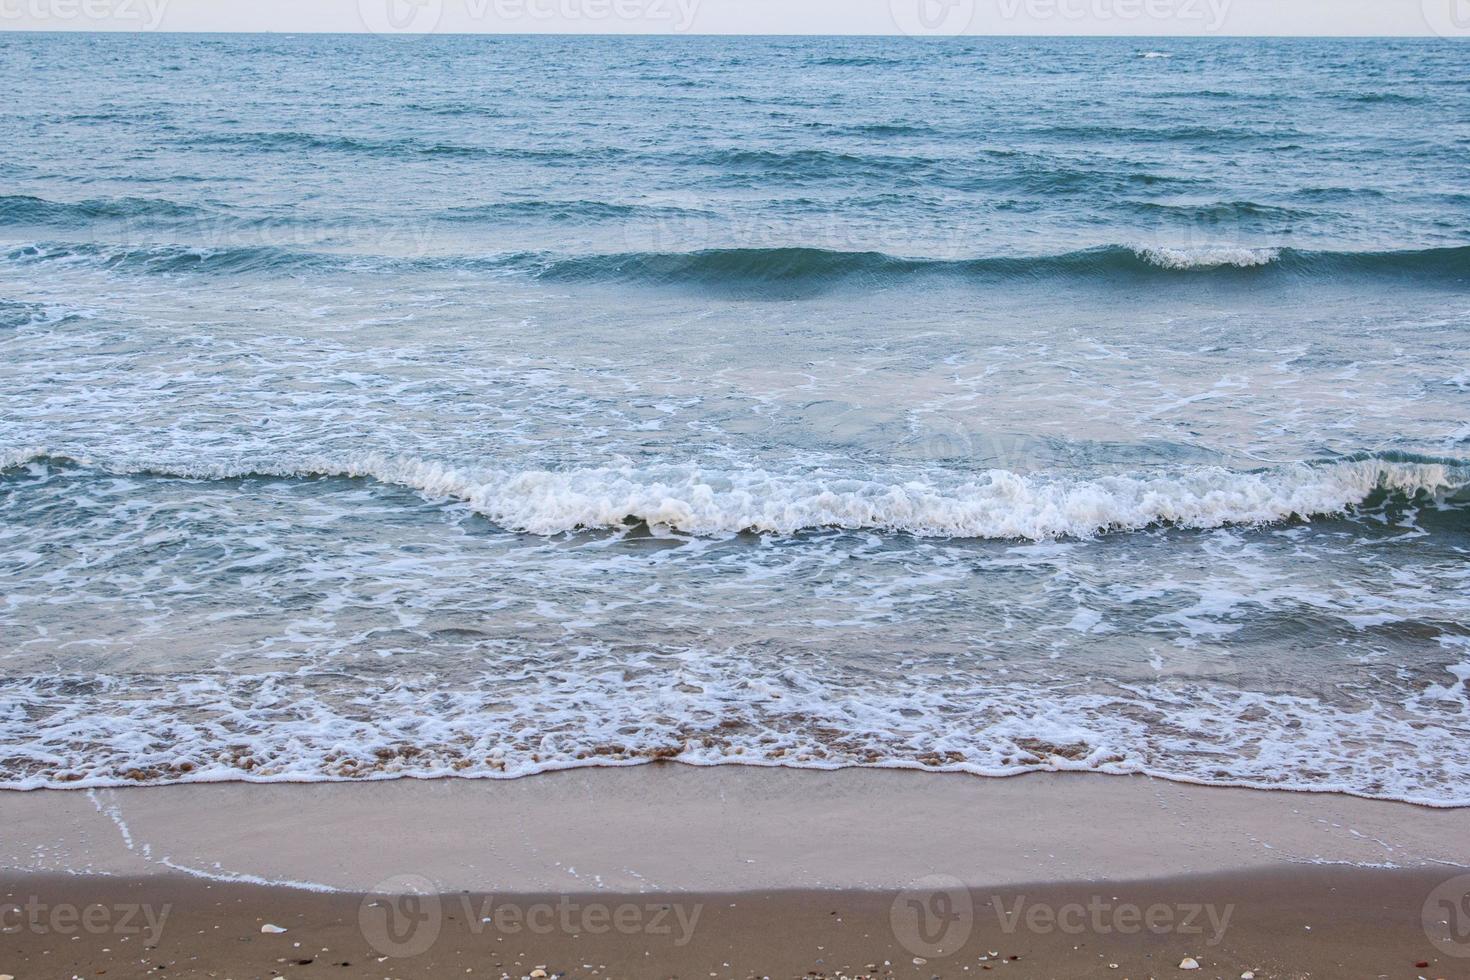 forte vento e onde oceaniche colpiscono la riva. la sera il fondale era azzurro, alternato alla graniglia di sabbia per un periodo che la natura ha creato, bello e spaventoso. foto